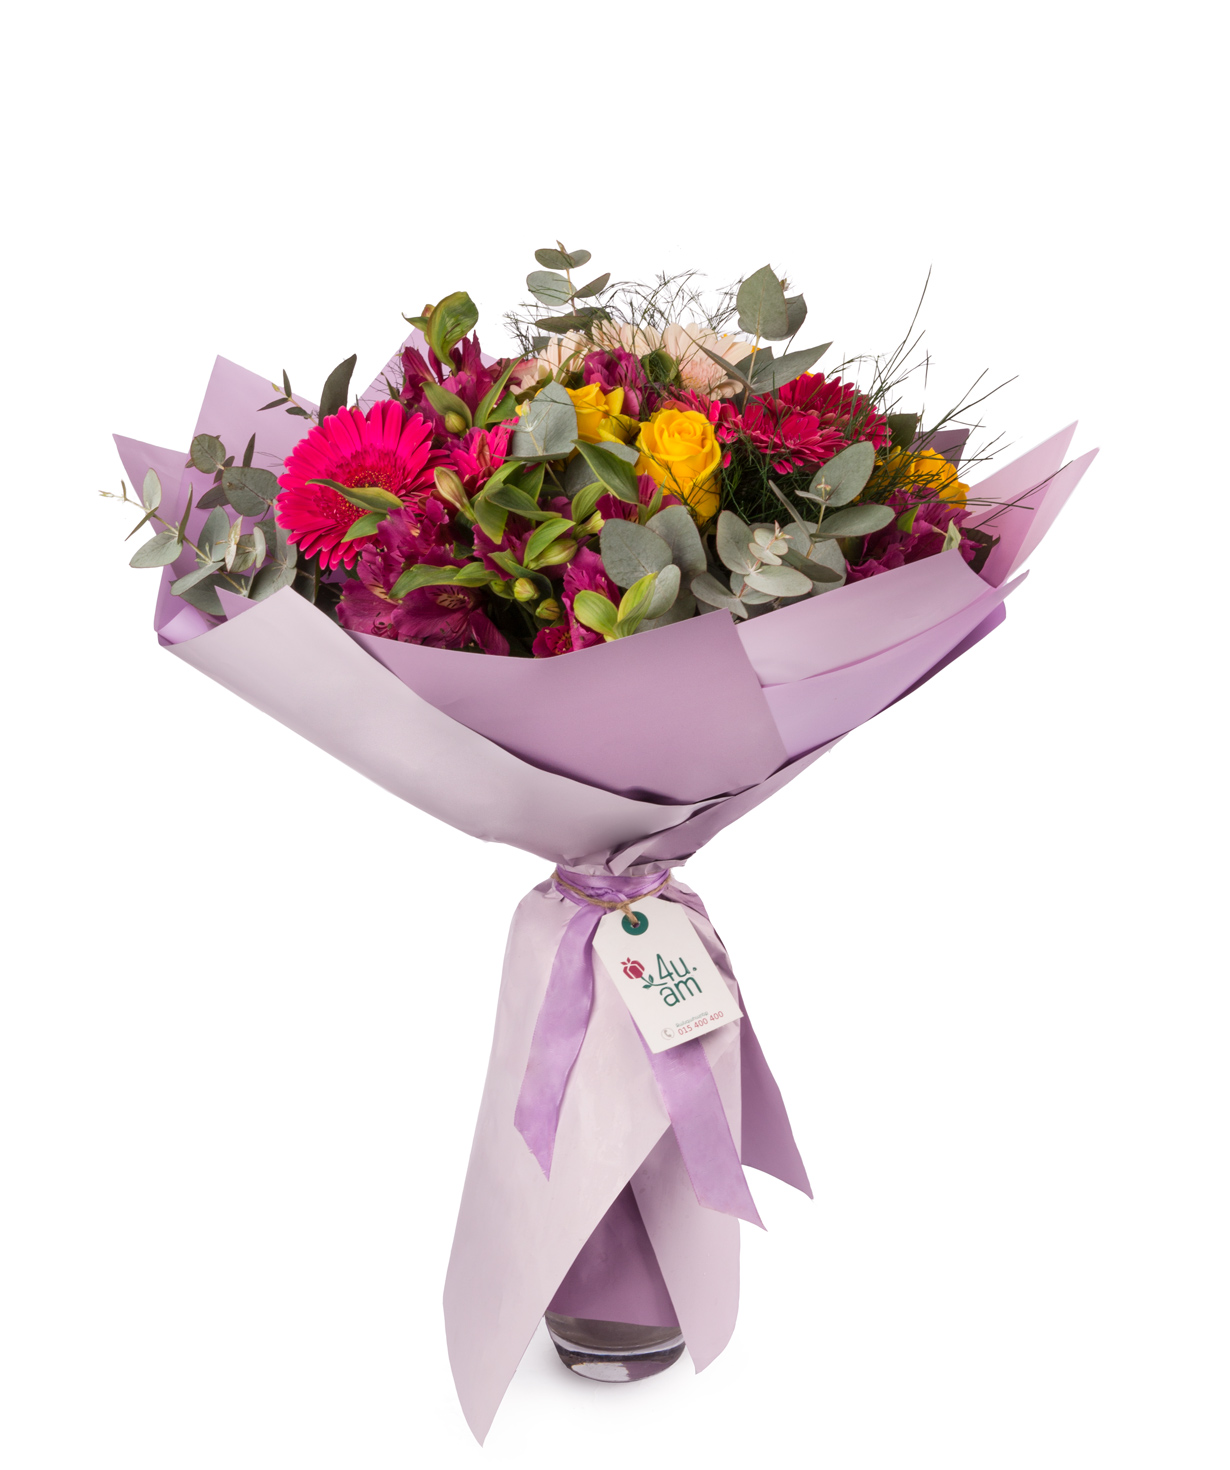 Bouquet `Bologna` with roses, alstroemerias and gerberas